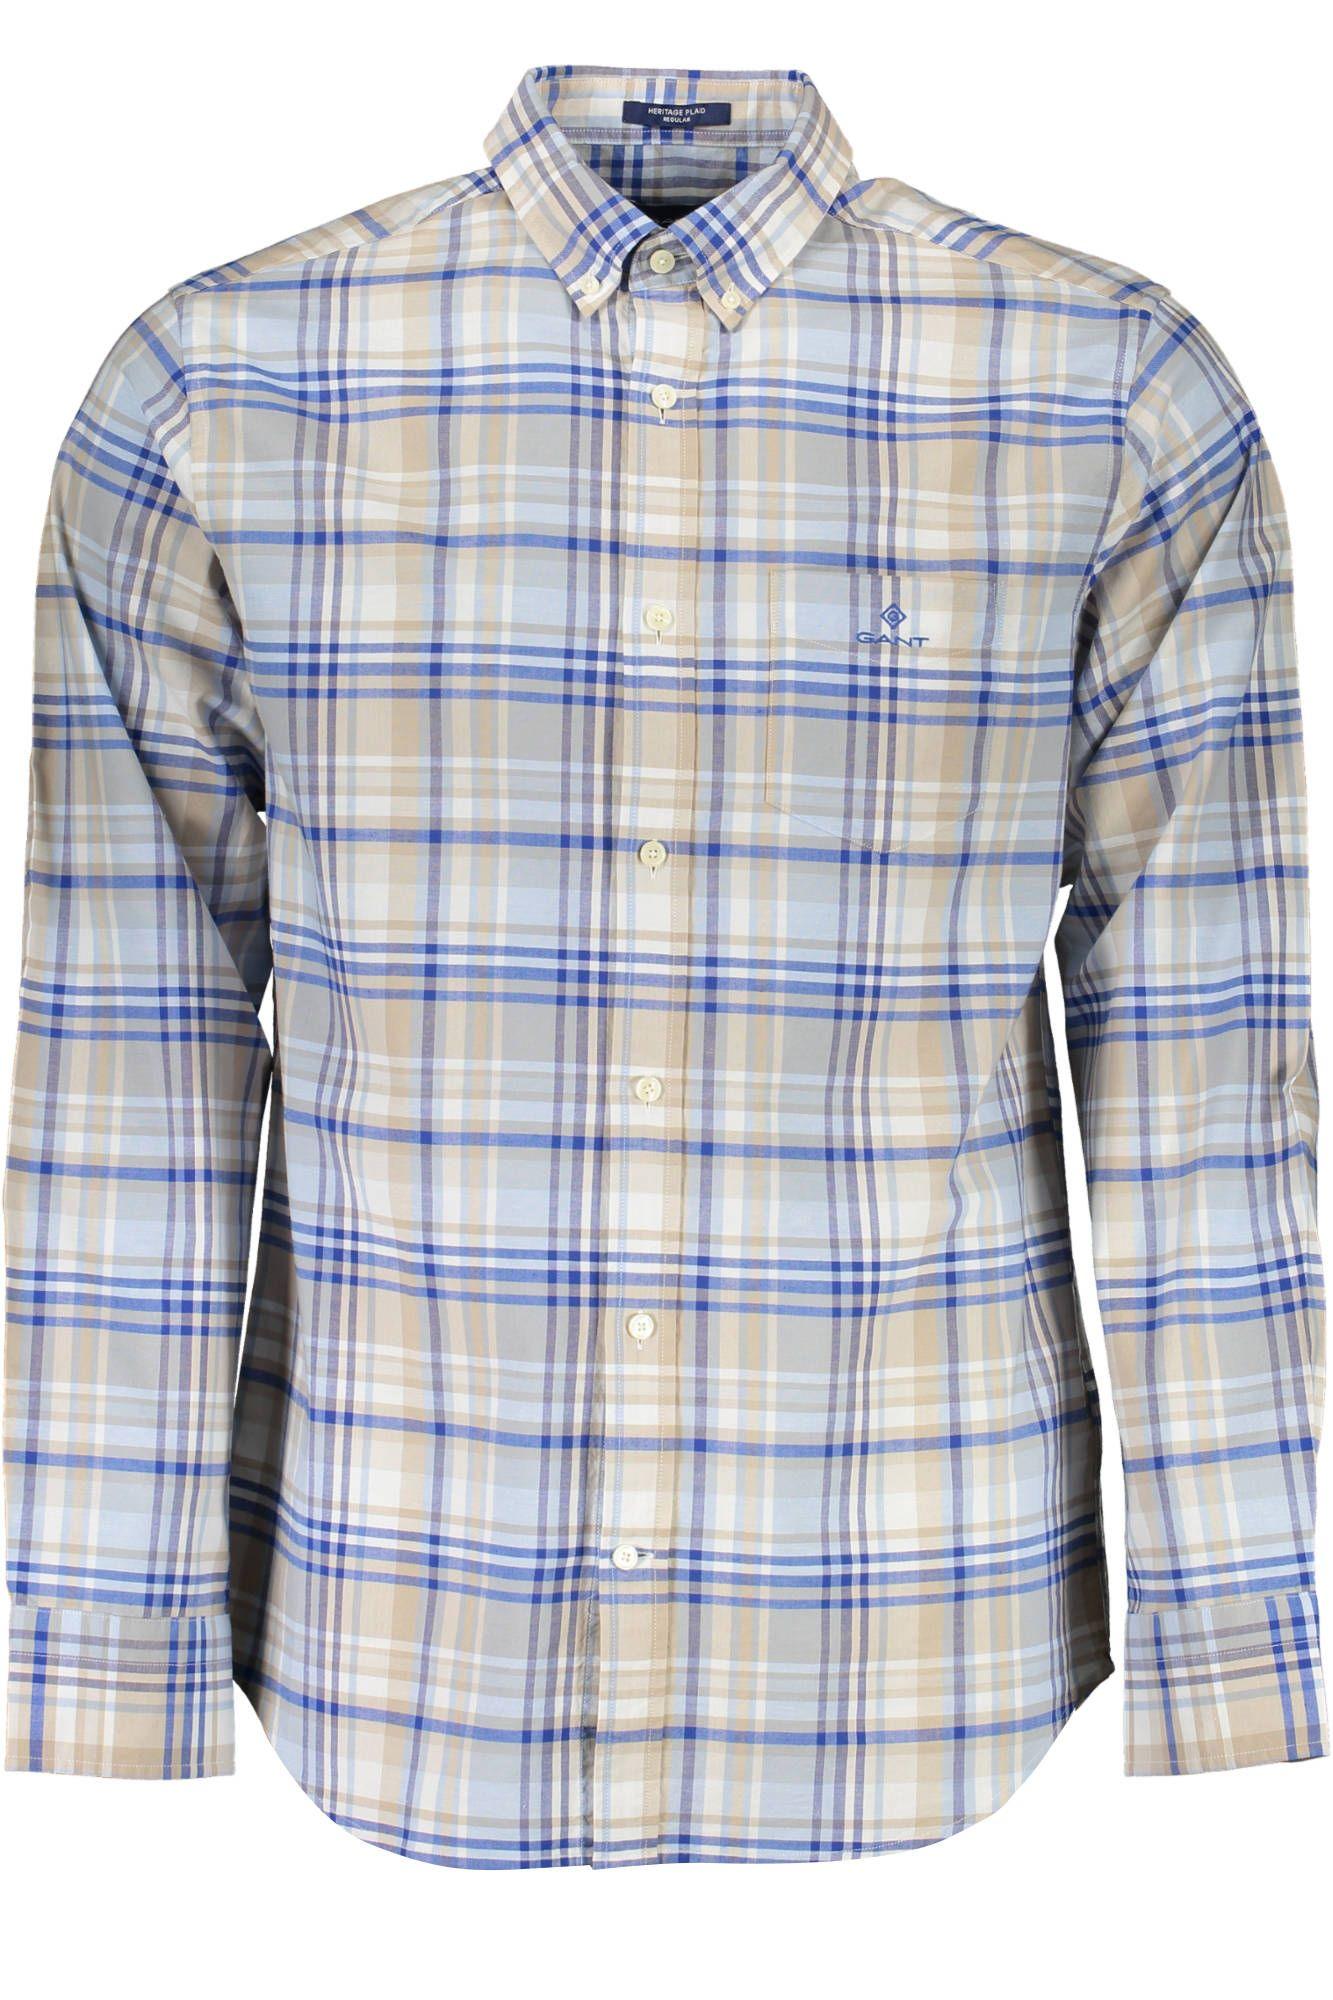 Gant Elegant Light Blue Summer Shirt for Men - PER.FASHION